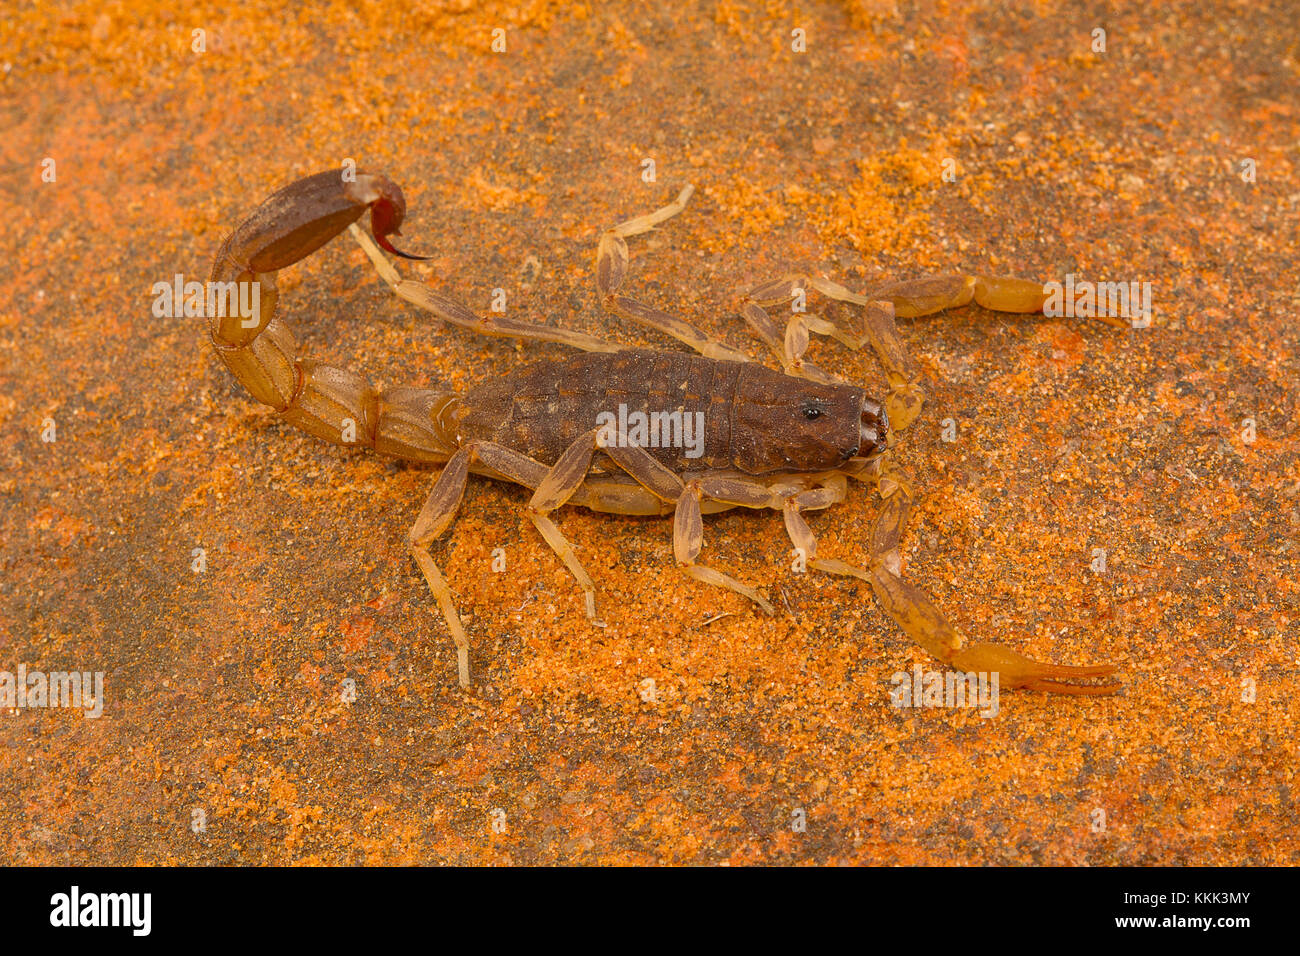 Fat-tailed Scorpion, Gattung Lychas von Pondicherry, Tamil Nadu, Indien. Sie werden auch als Rinde Scorpions bekannt Stockfoto